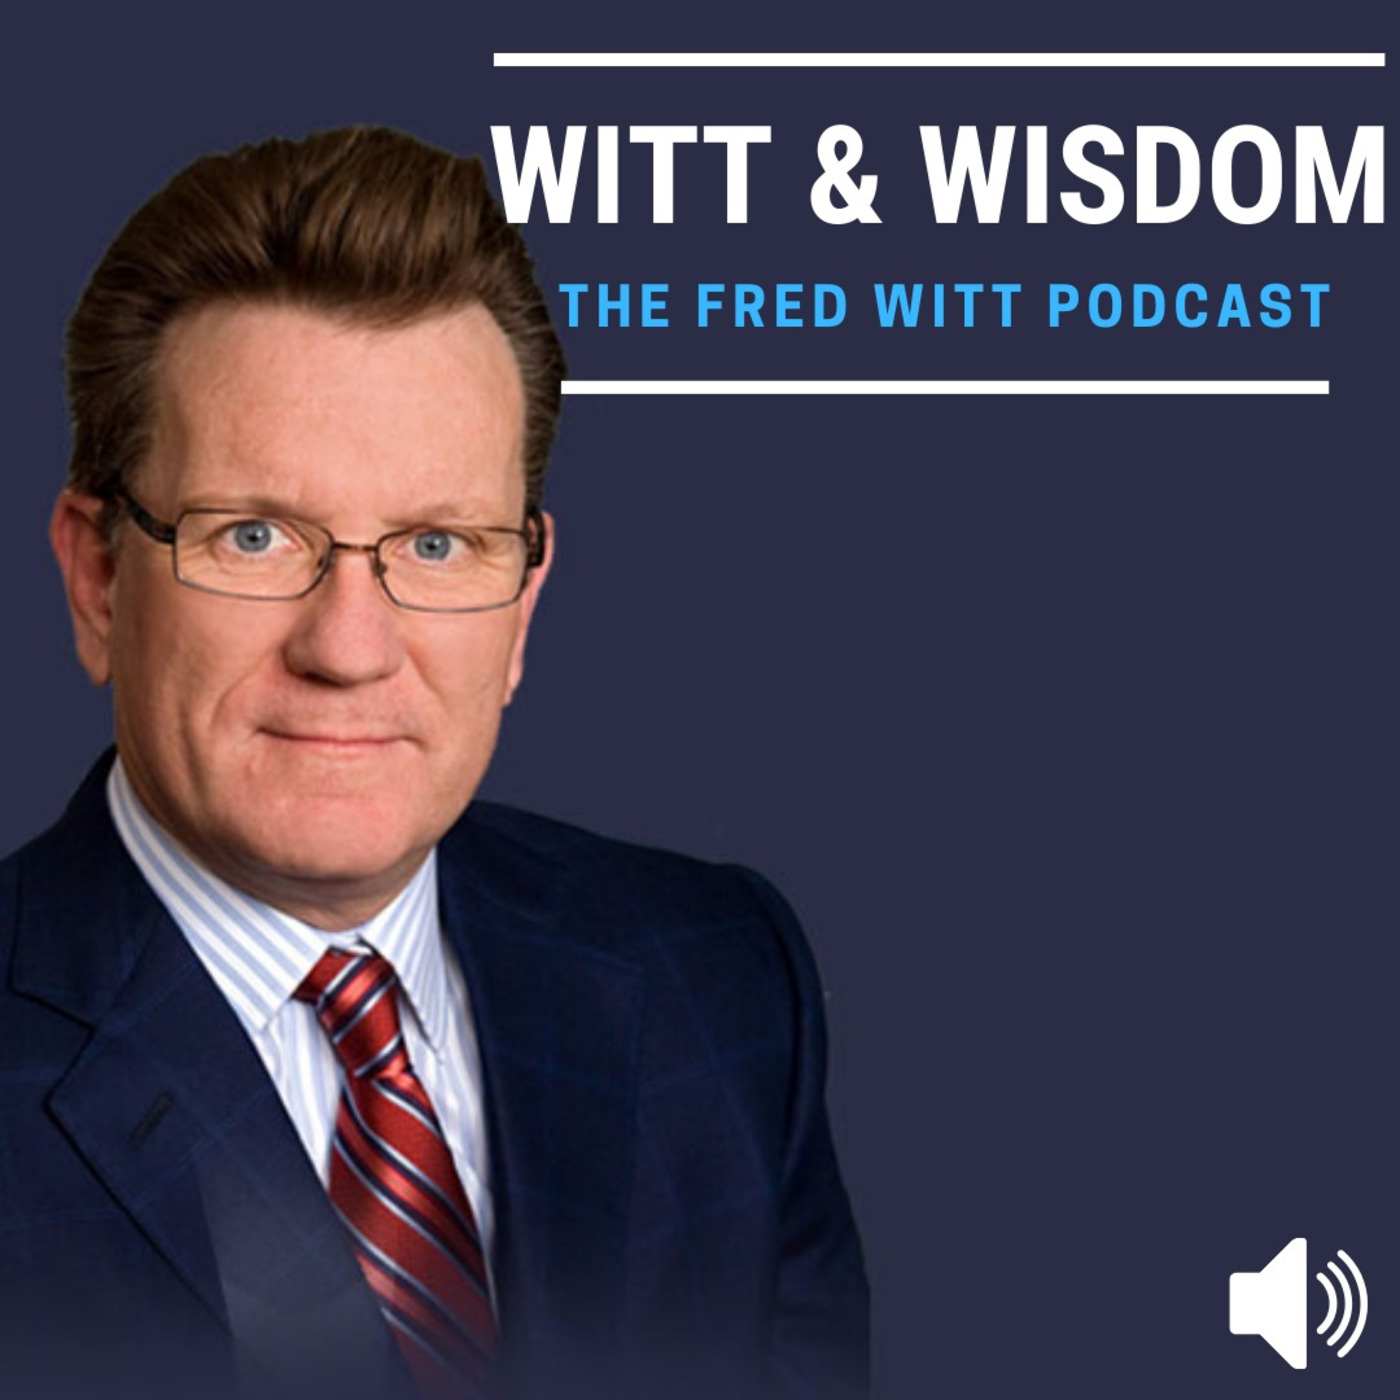 Witt & Wisdom: The Fred Witt Podcast